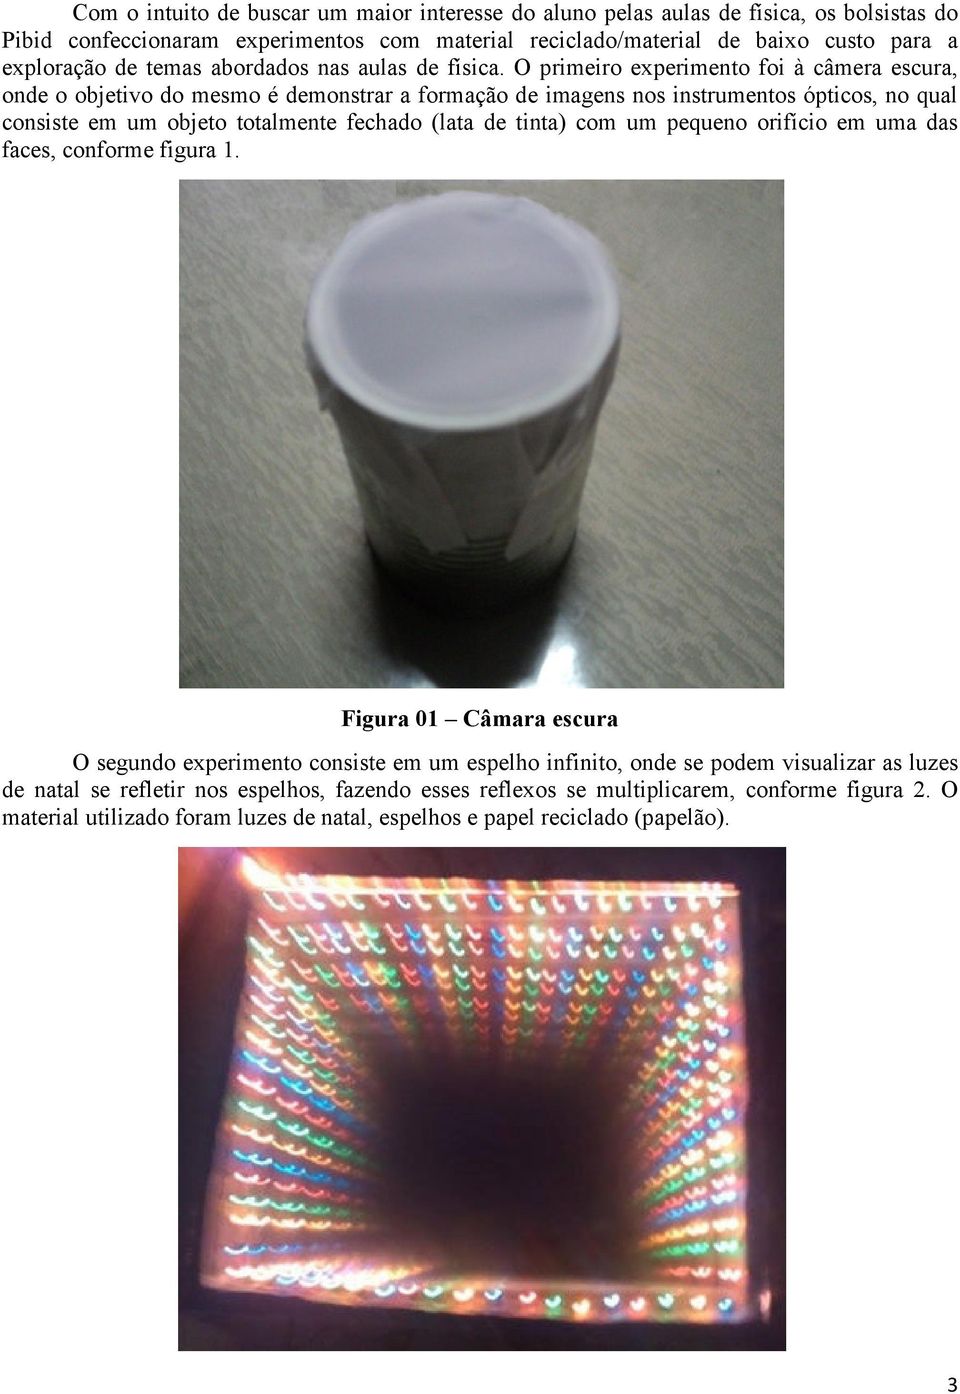 O primeiro experimento foi à câmera escura, onde o objetivo do mesmo é demonstrar a formação de imagens nos instrumentos ópticos, no qual consiste em um objeto totalmente fechado (lata de